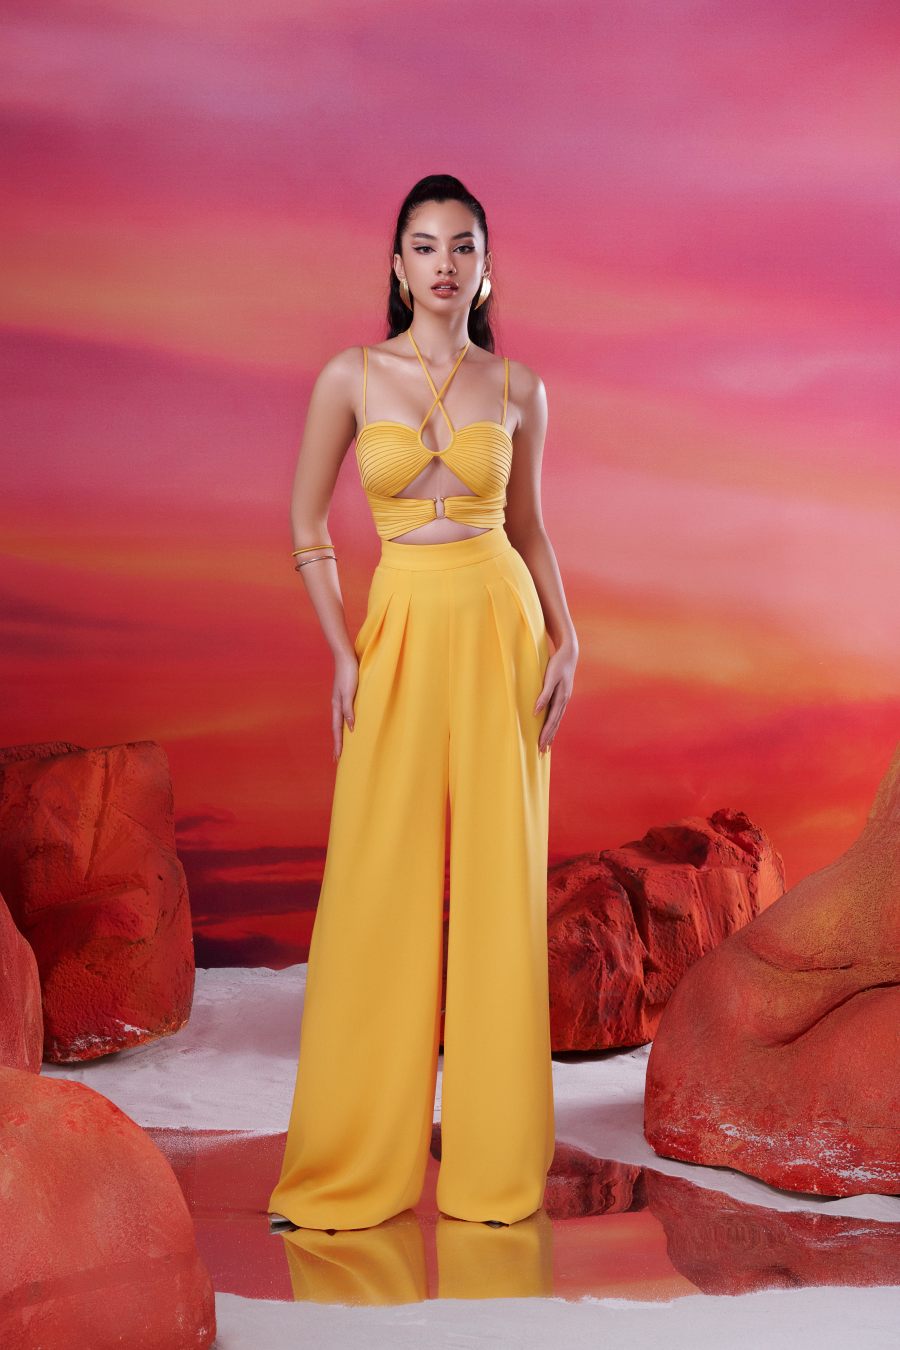 Sau màn ra mắt thành công ở show diễn Vietnam Beauty Fashion Fest 2022, BST “Inside Out” của NTK Đỗ Long liên tục duy trì độ nóng khi trở thành sự lựa chọn của nhiều người nổi tiếng. Mới đây, anh giới thiệu bộ ảnh thời trang thứ hai của bộ sưu tập này.